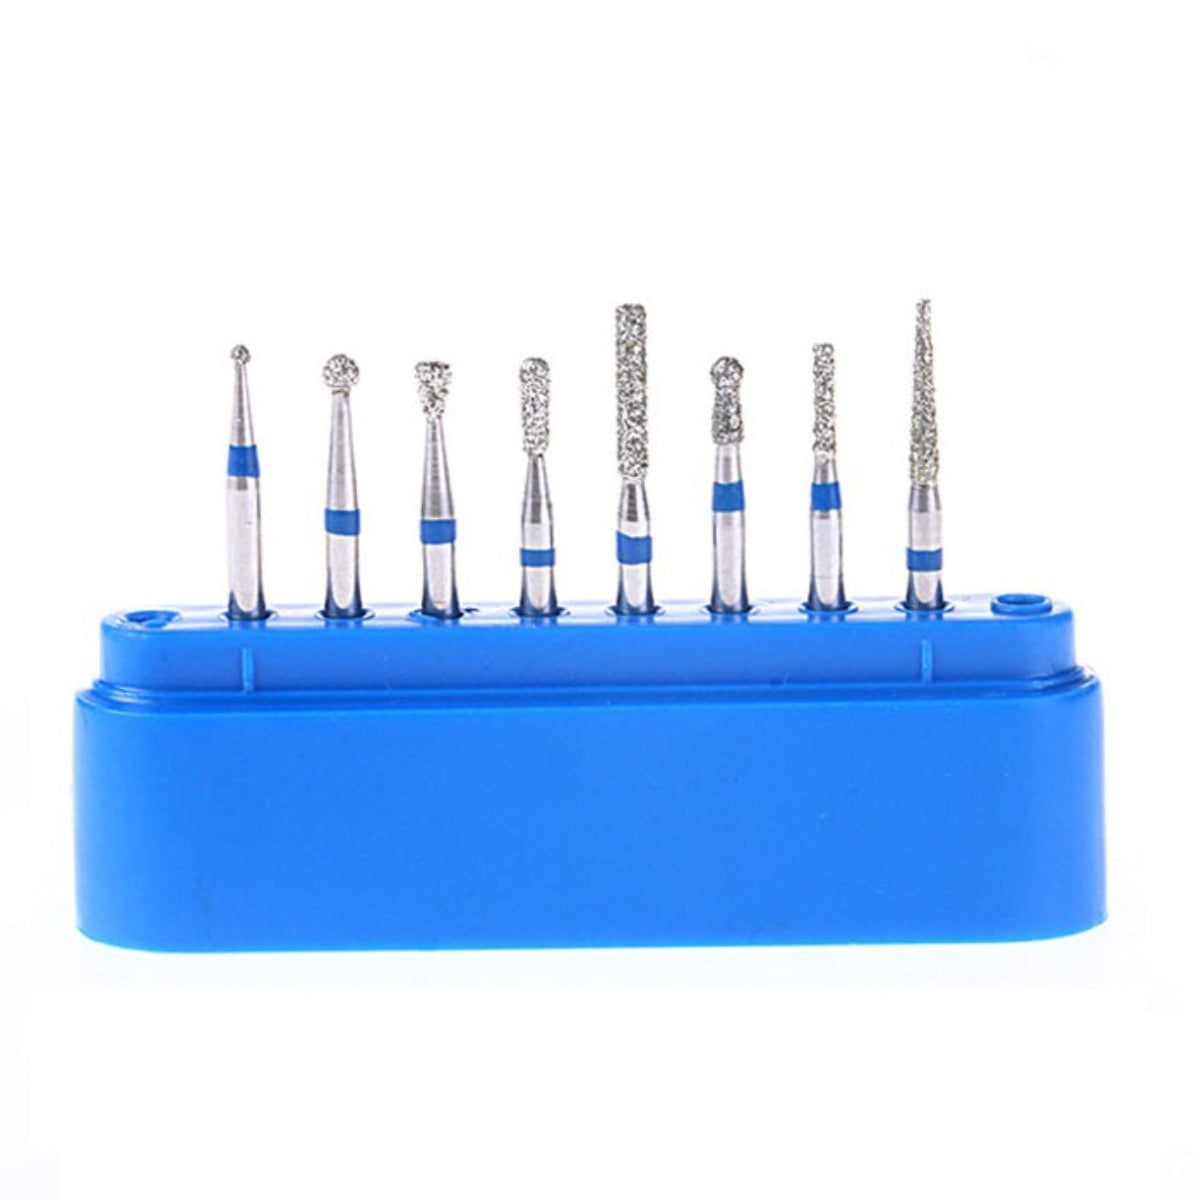 Dental Diamond Bur FG-103 Cavity Preparation Kit 8pcs/Kit - pairaydental.com